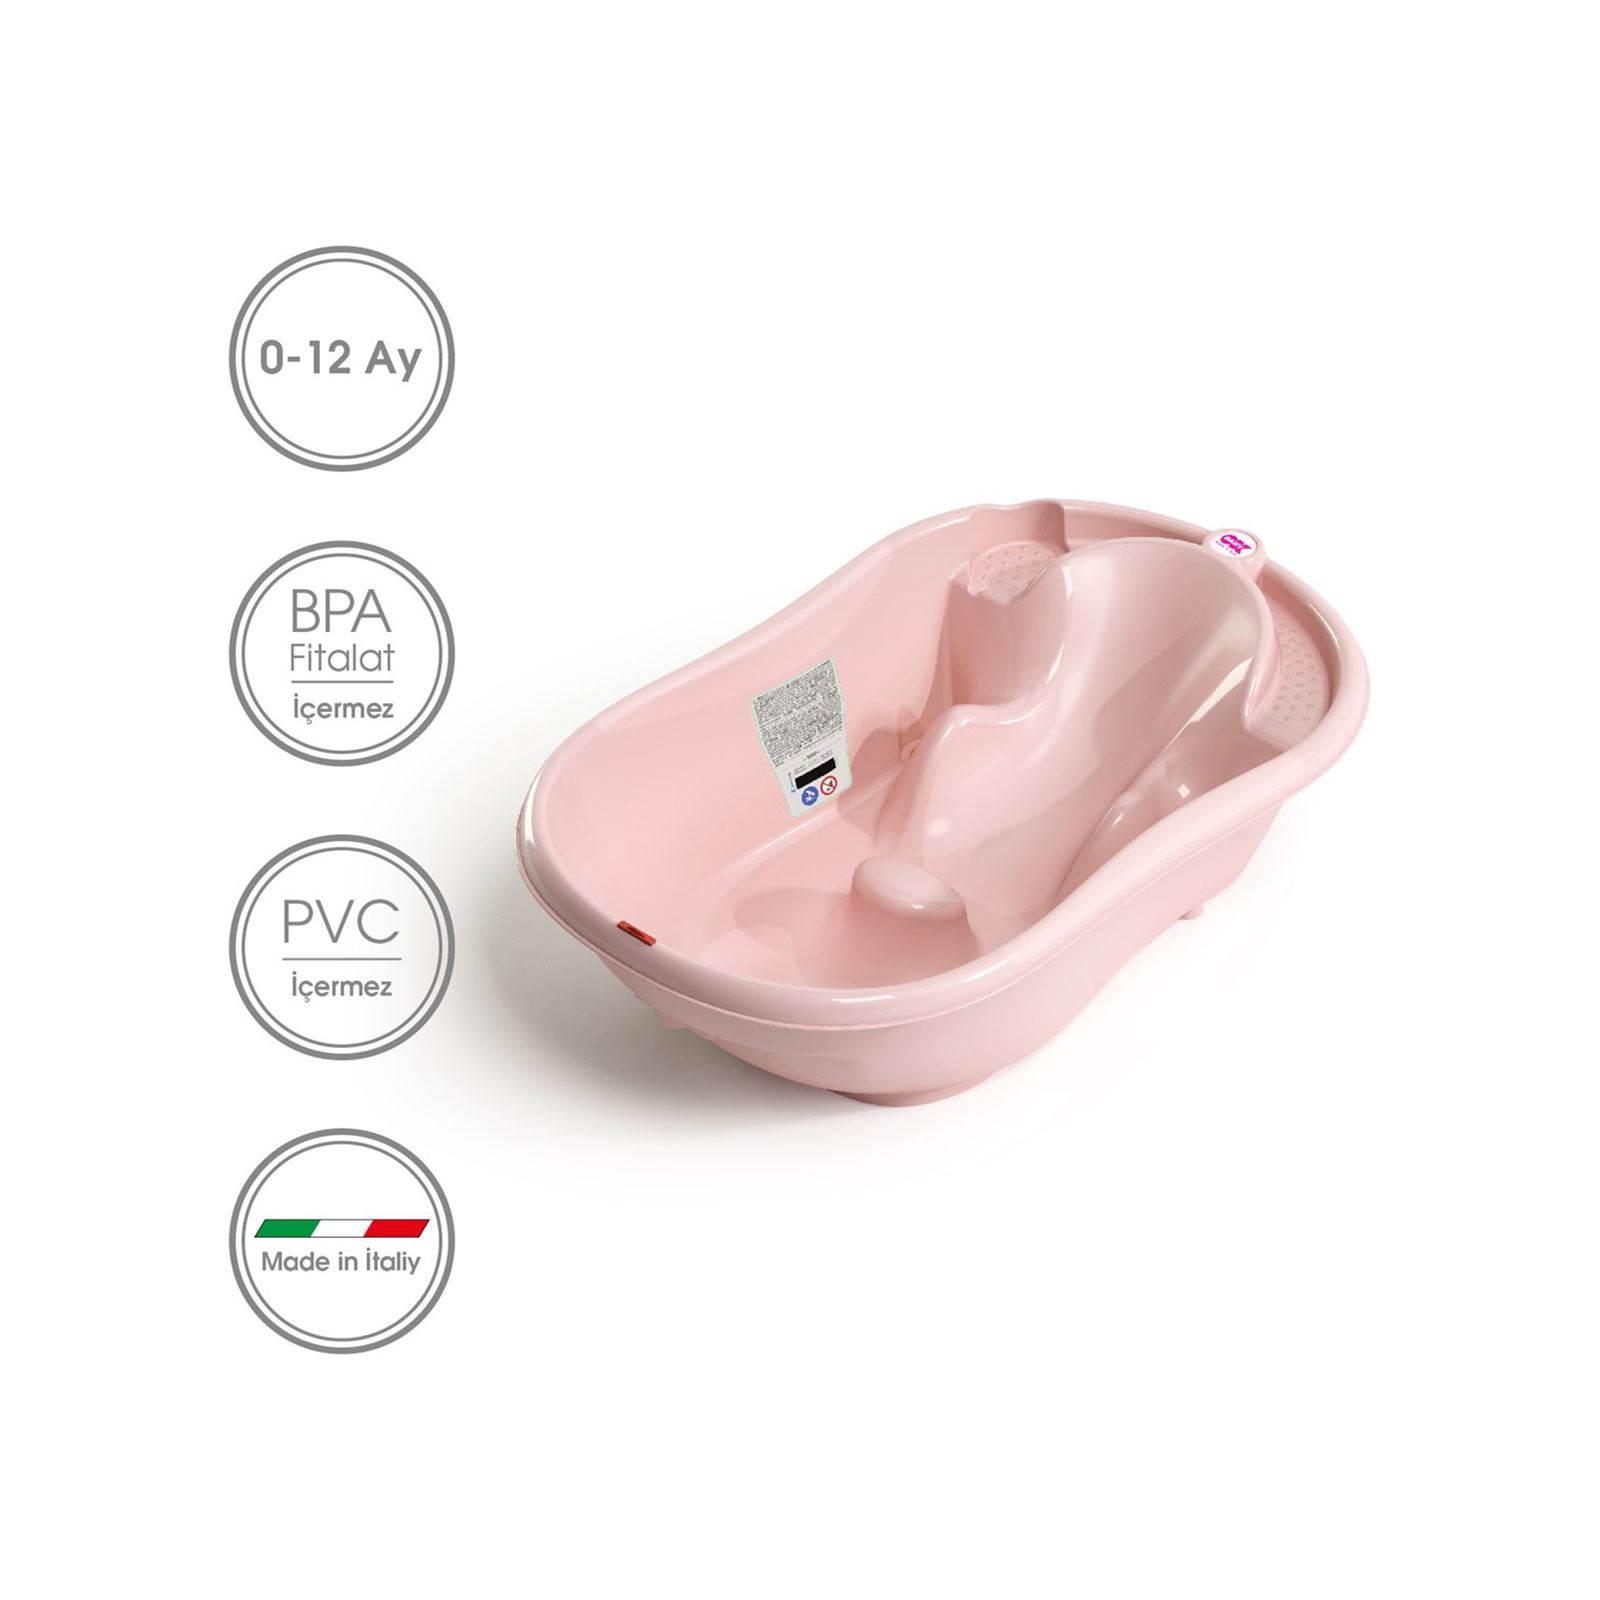 OkBaby Onda Banyo Küveti & Küvet Taşıyıcı / Pembe